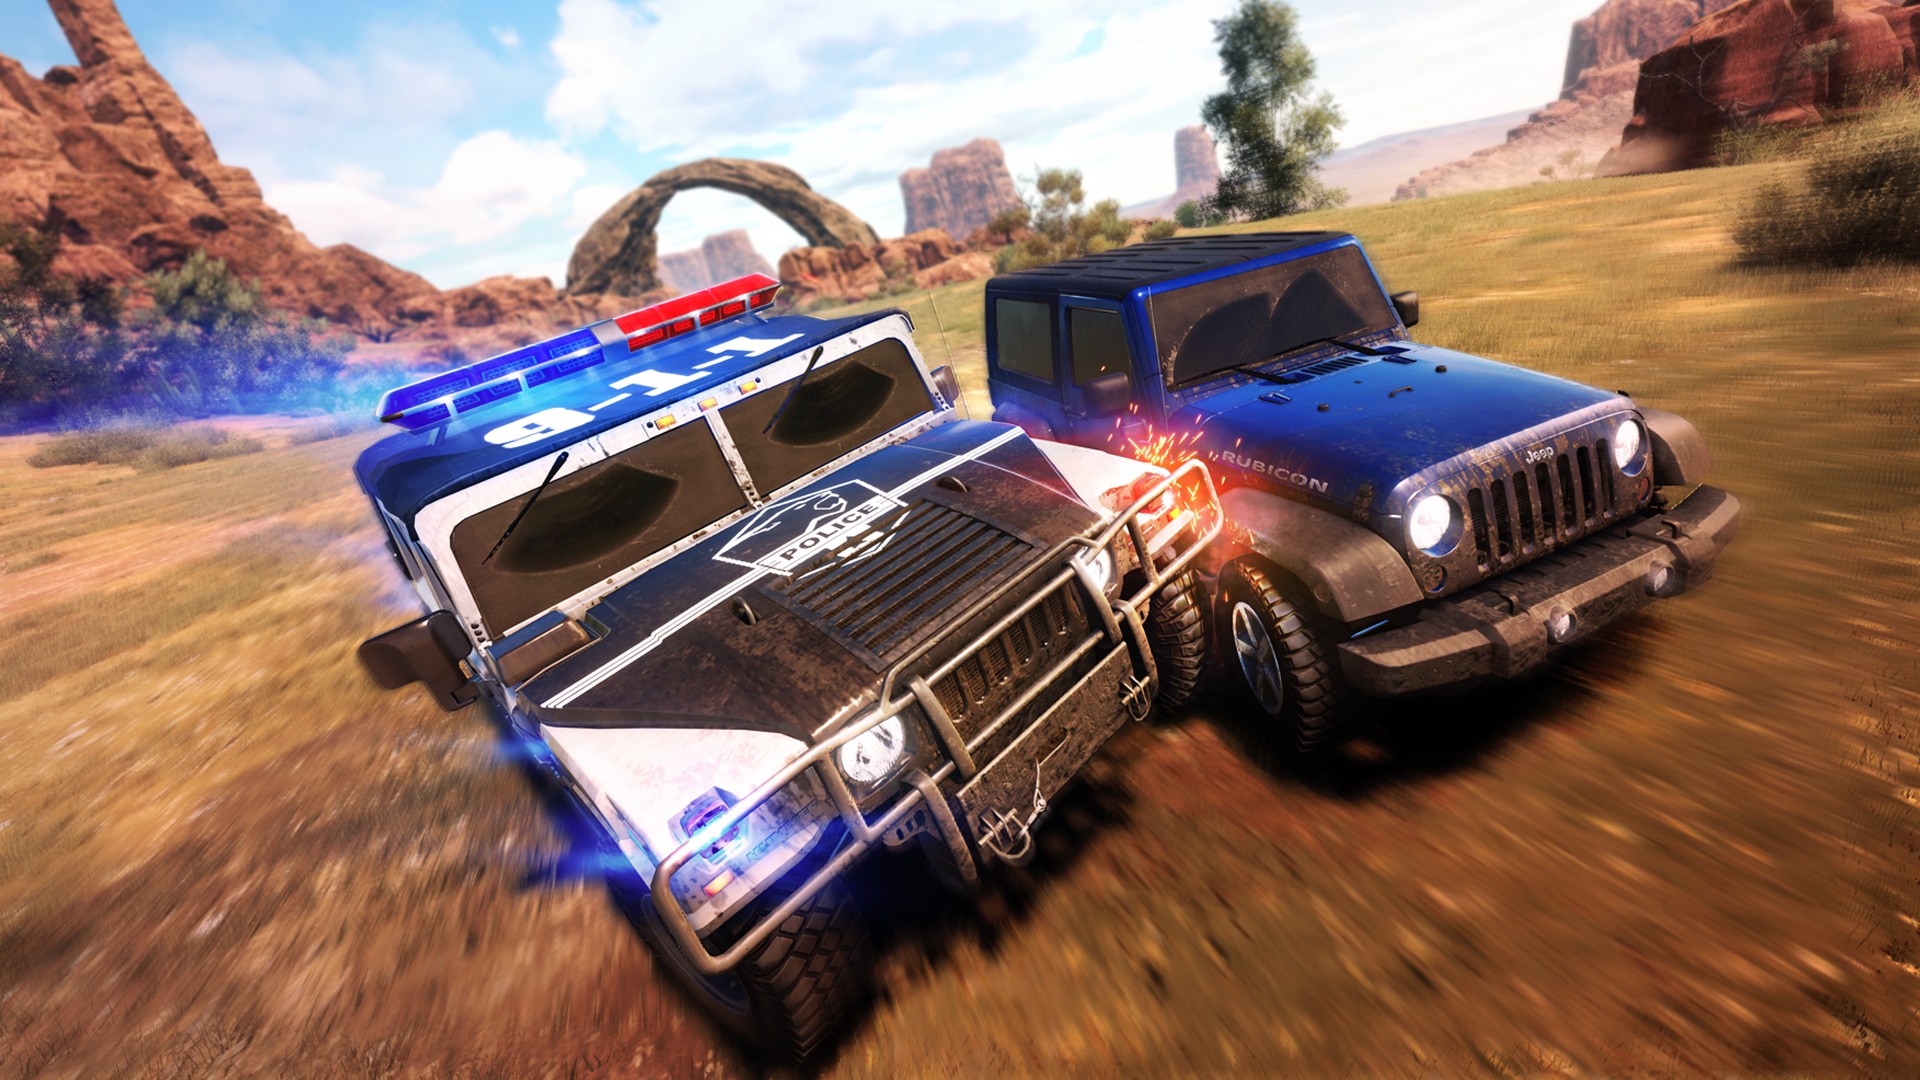 The Crew sunucularının kapanma davası: Ubisoft yarış oyunu The Crew'da iki araba birbirine çarptı